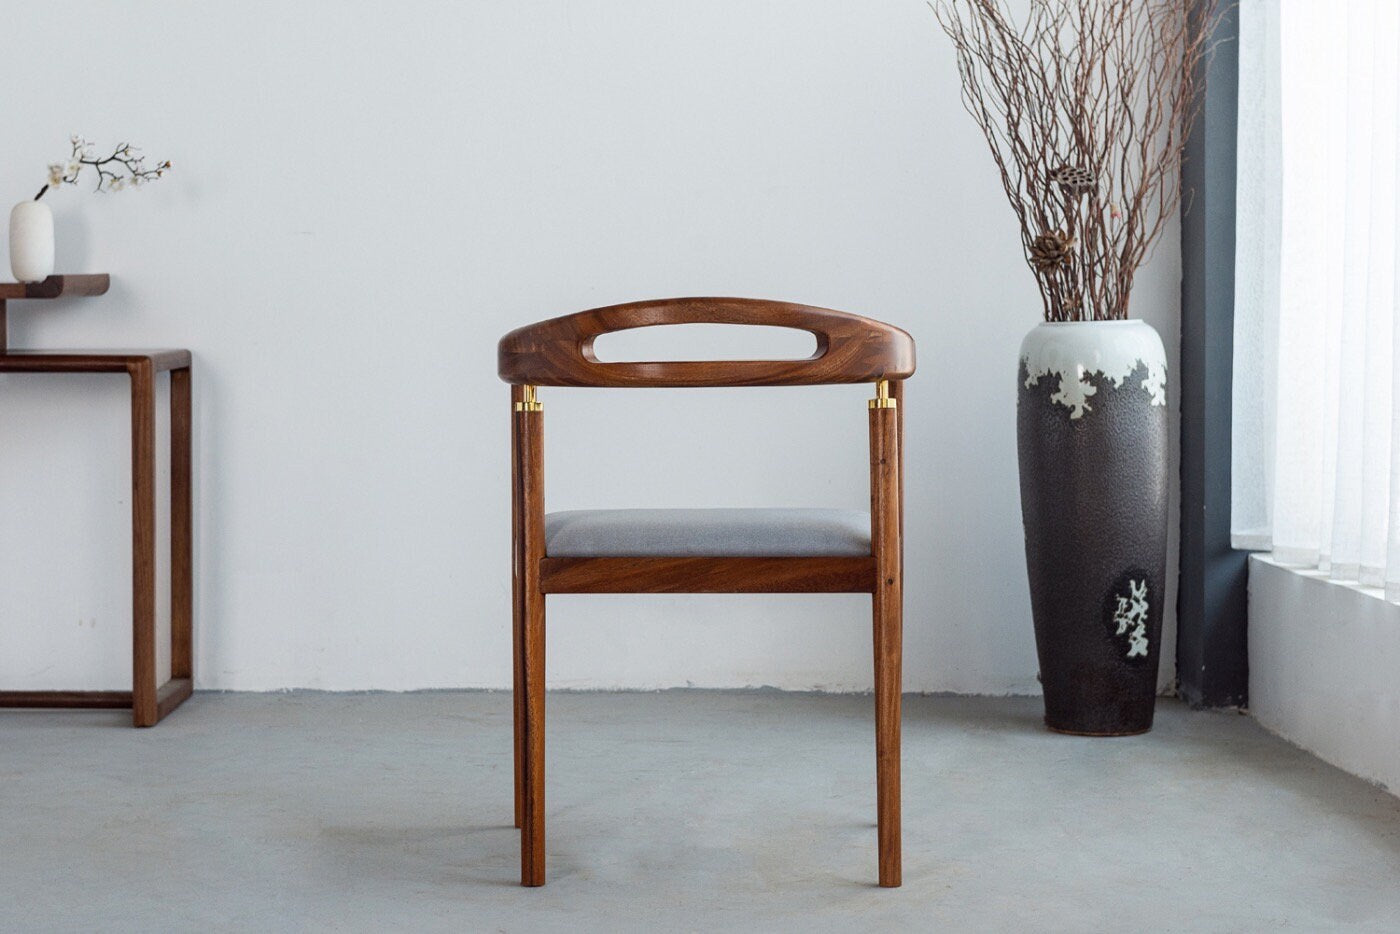 كرسي تصميم خاص، كرسي خشب جلد، كرسي جلد، كرسي خشب، كرسي الجوز